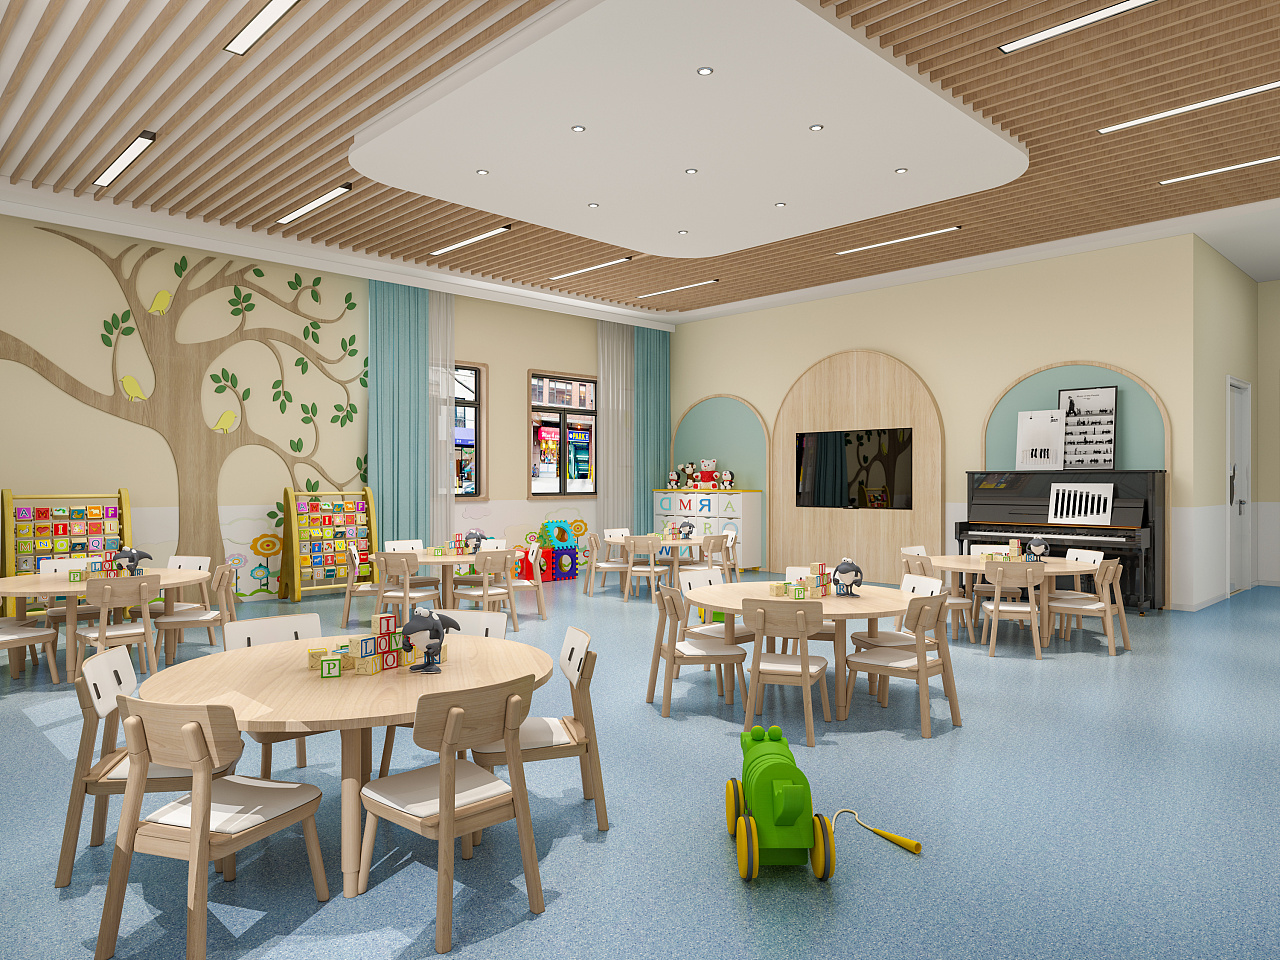 现代幼儿园 - 效果图交流区-建E室内设计网